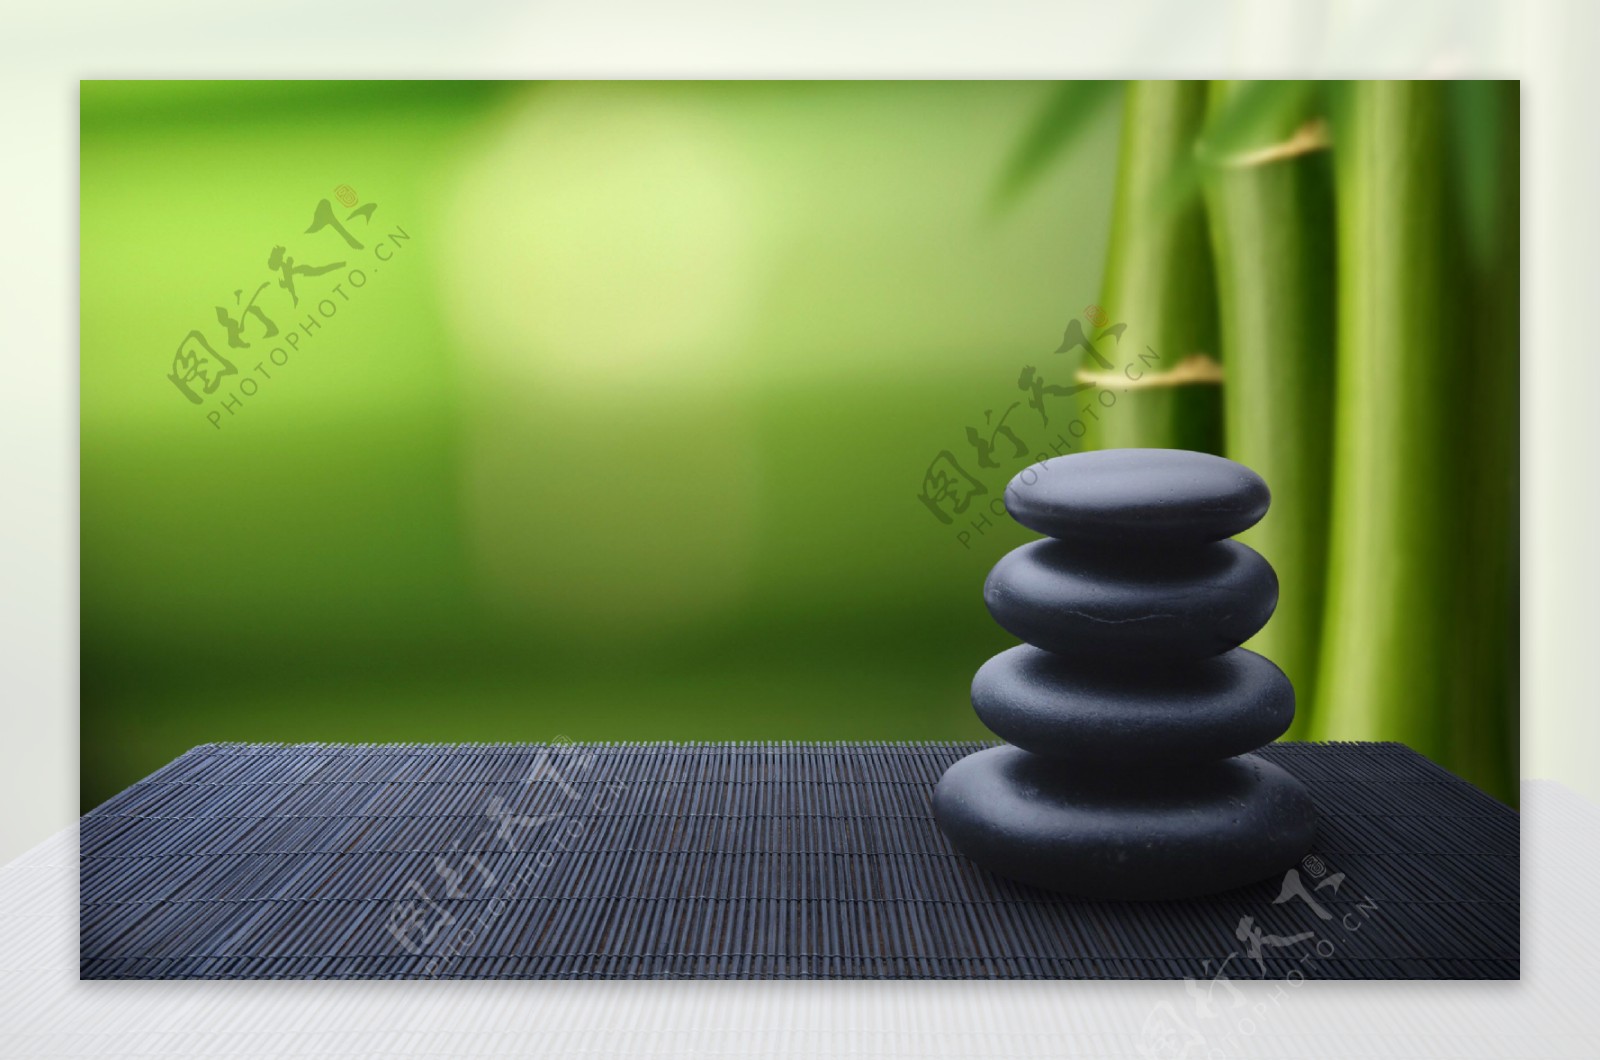 黑色石头桌子竹子绿色背景